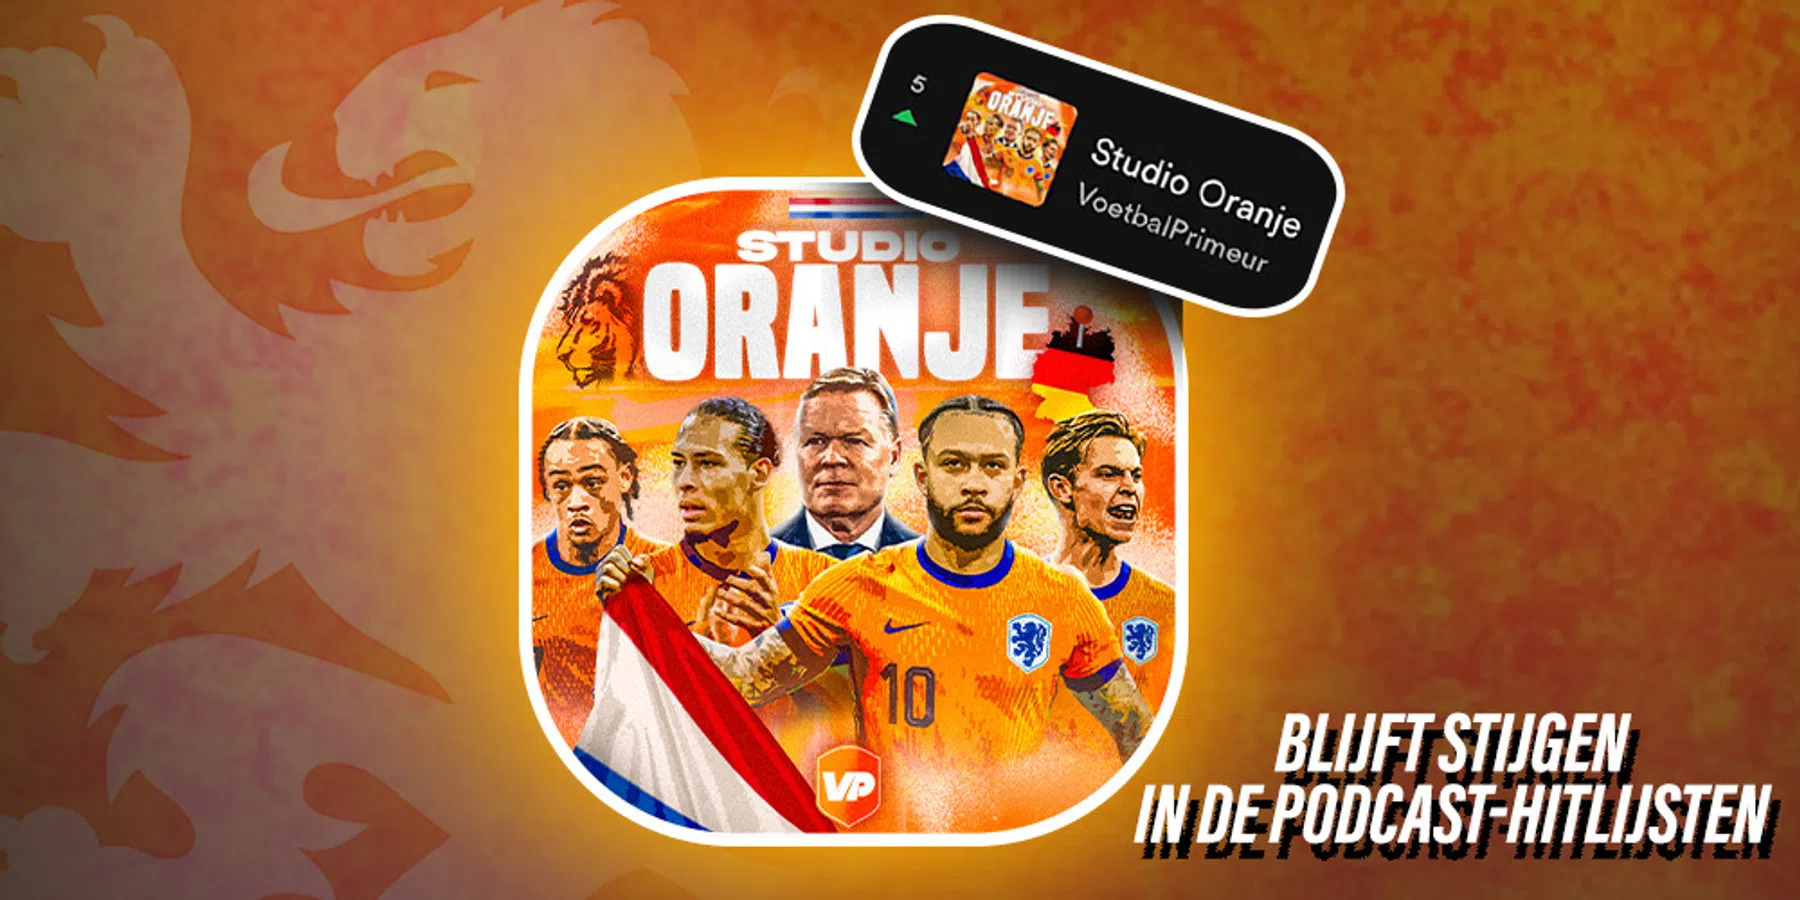 Op recordjacht: Studio Oranje bereikt podcast top-5